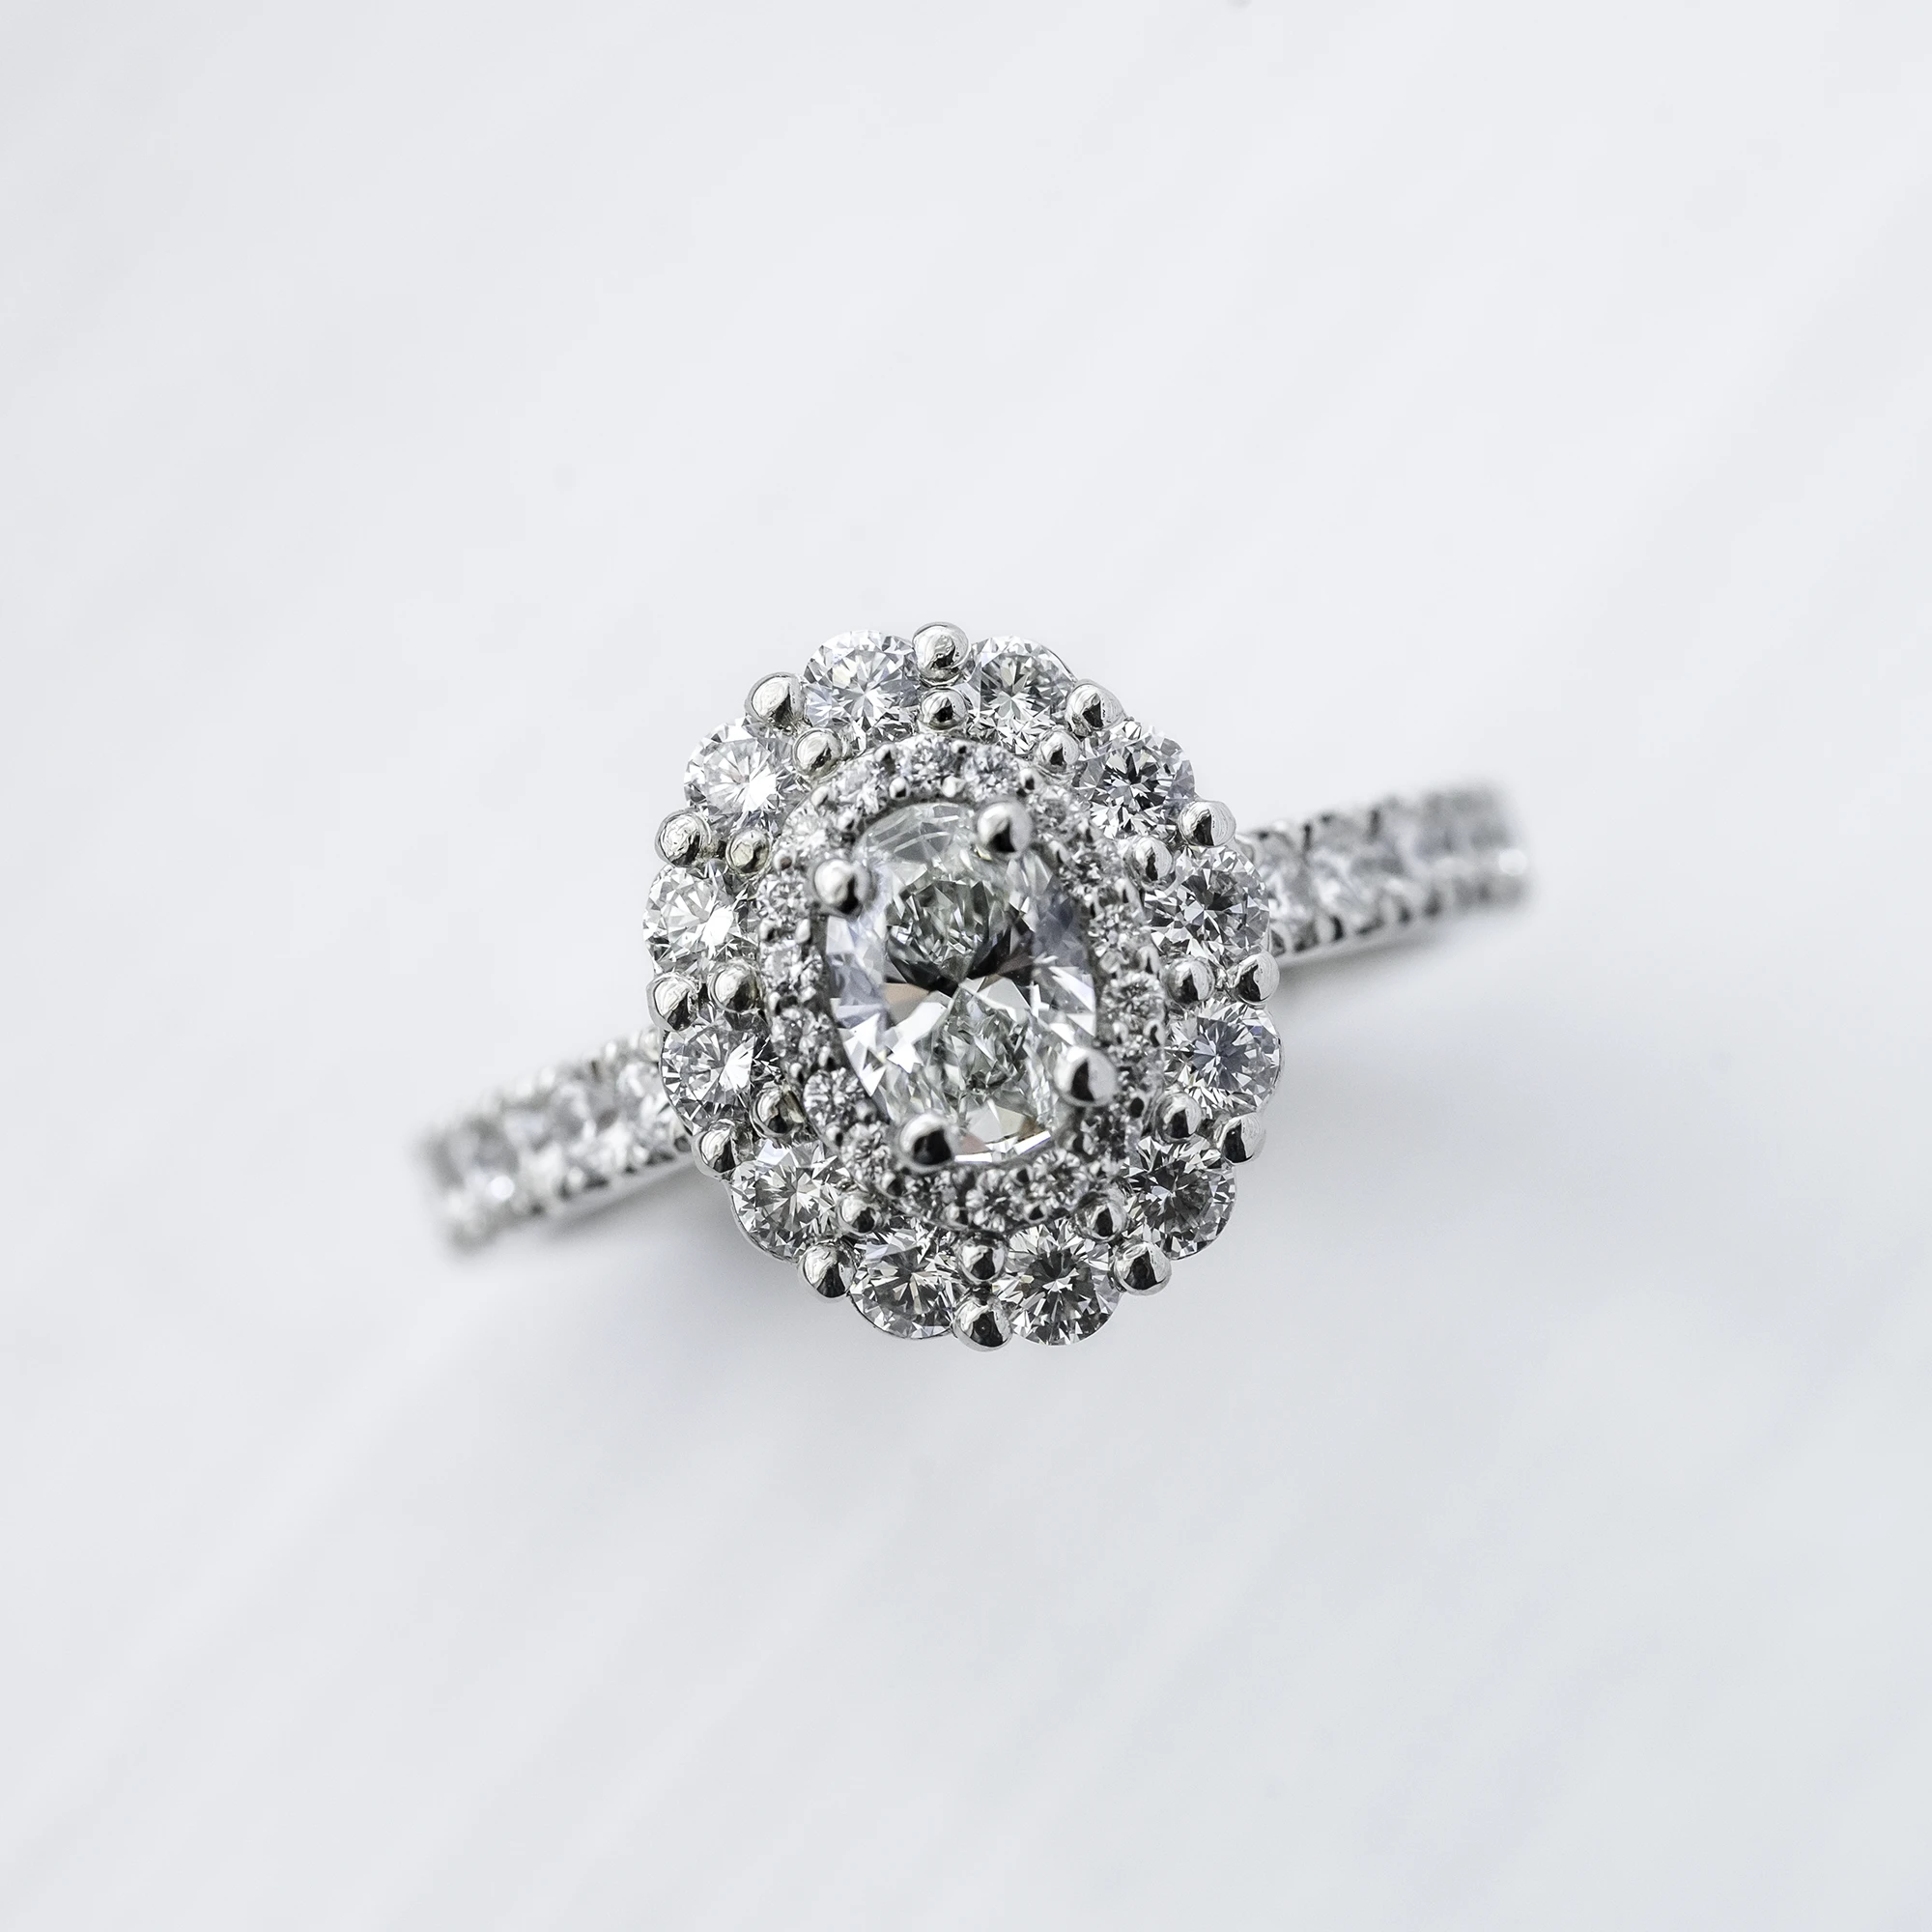 Bespoke Double Halo Diamond Engagement Ring